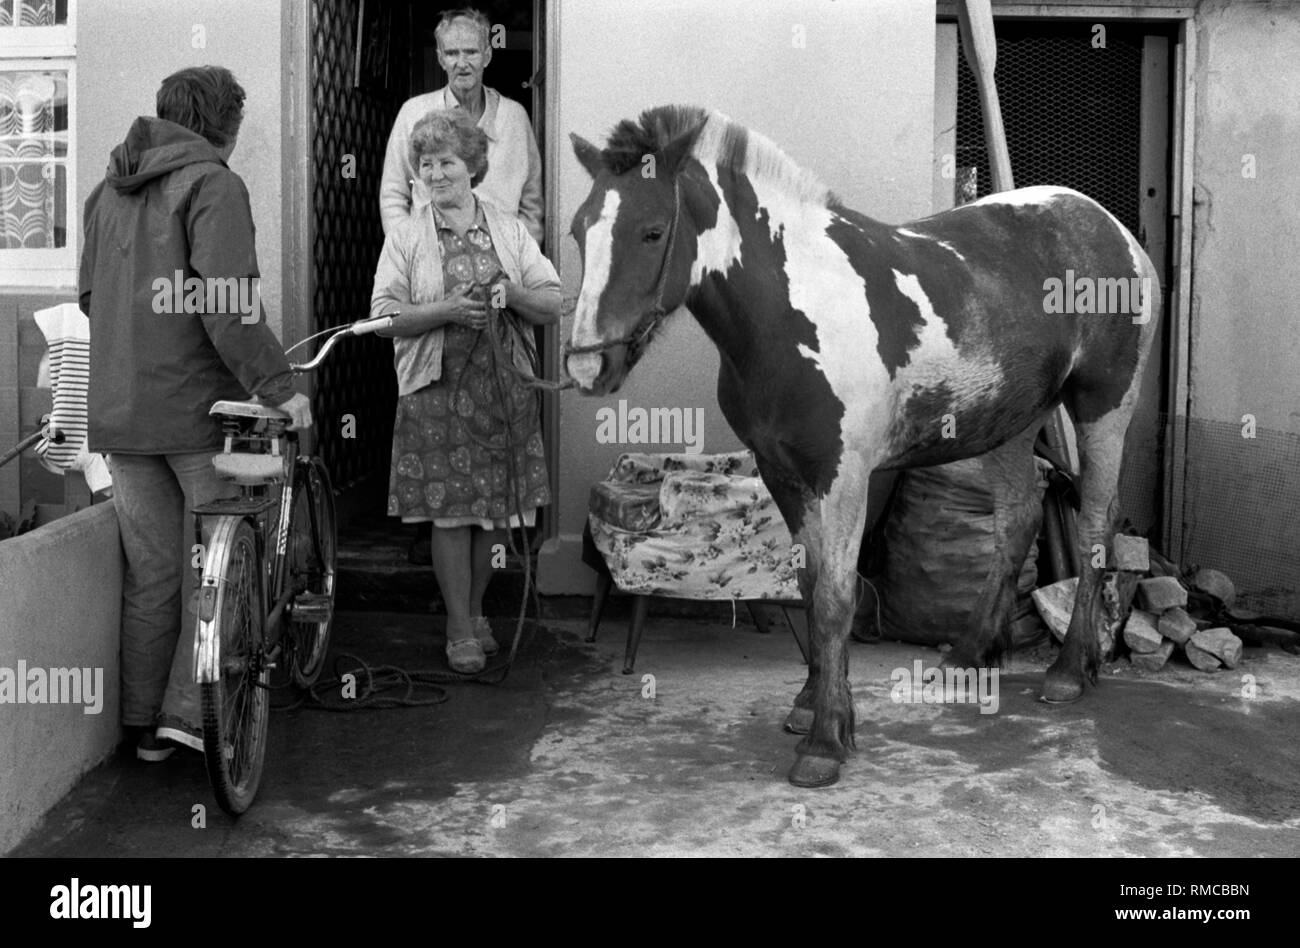 1970 famille irlandaise avec l'animal cheval urbain dans la cour avant de leur maison. Limerick, dans le comté de Limerick, Irlande. Côte ouest de l'Irlande du Sud 1970 HOMER SYKES Banque D'Images